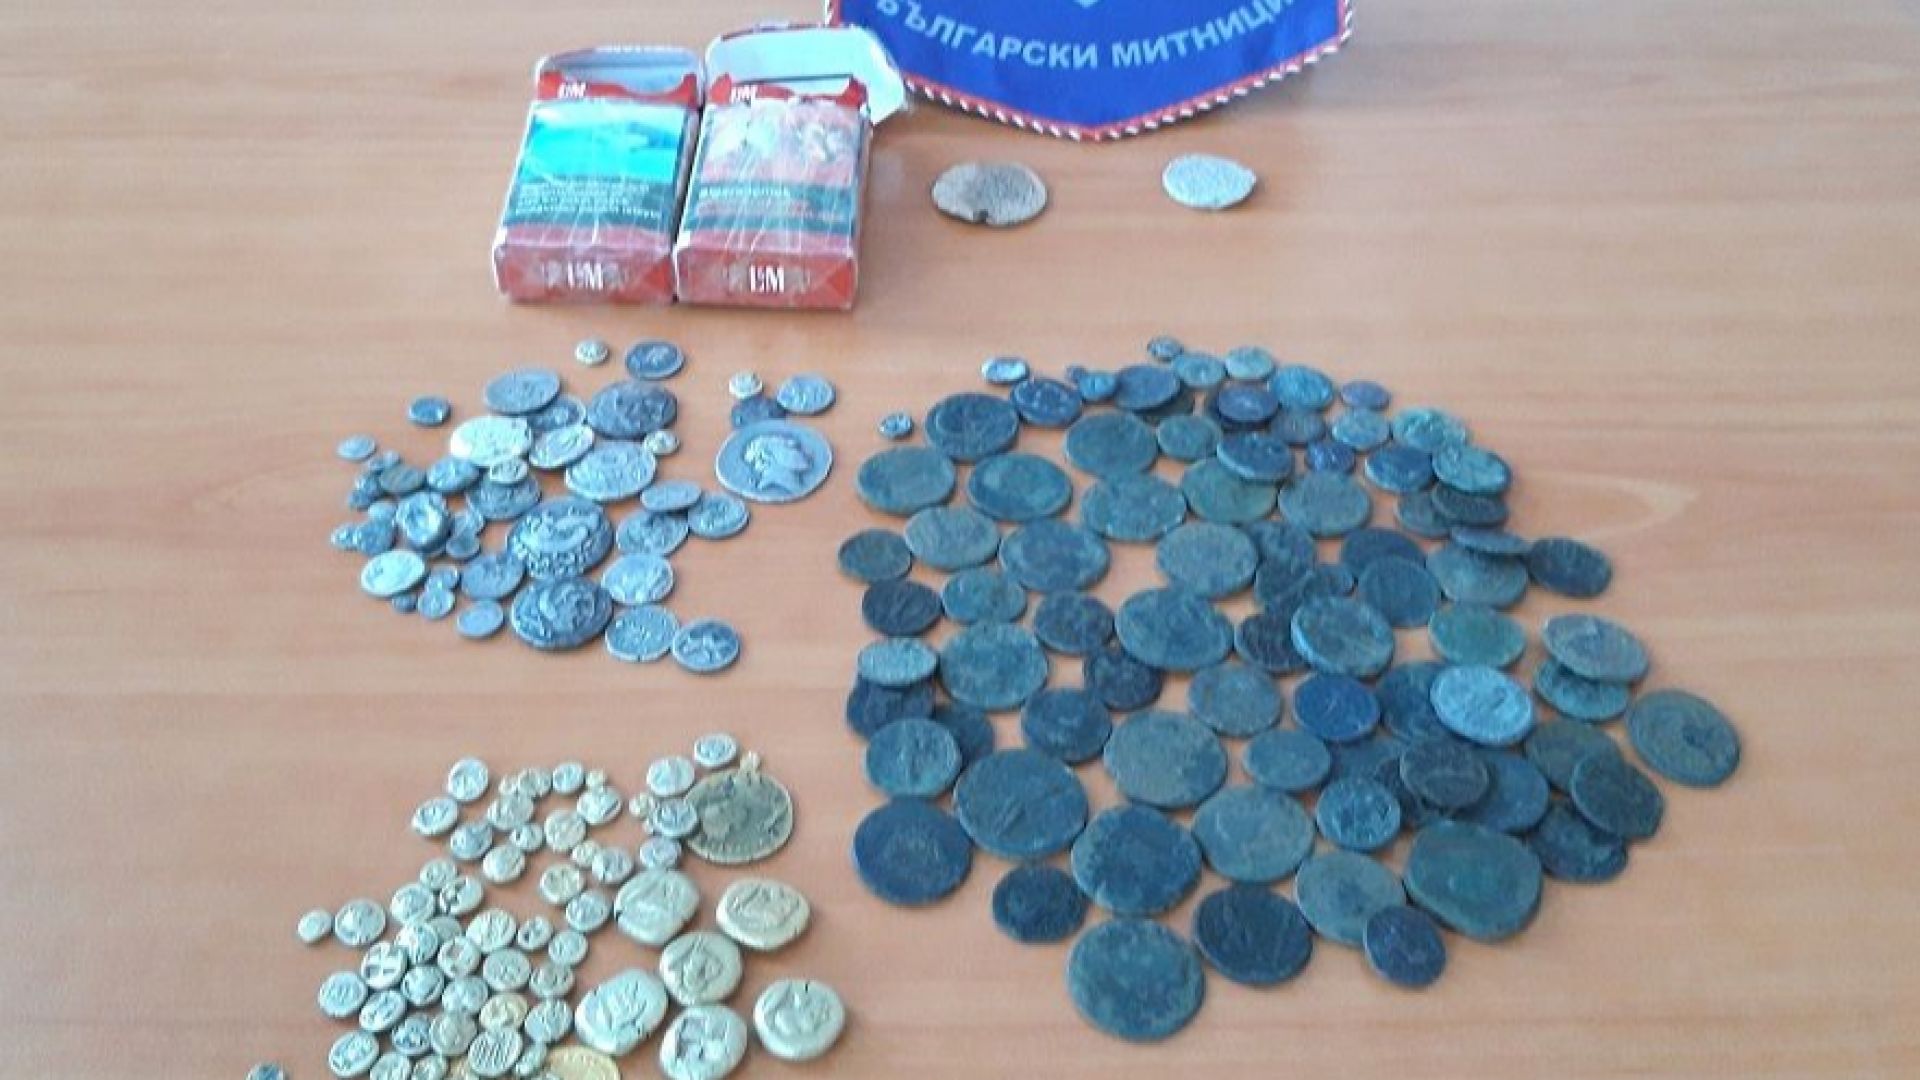 Митничари откриха старинни монети при проверка на товарен автомобил управляван